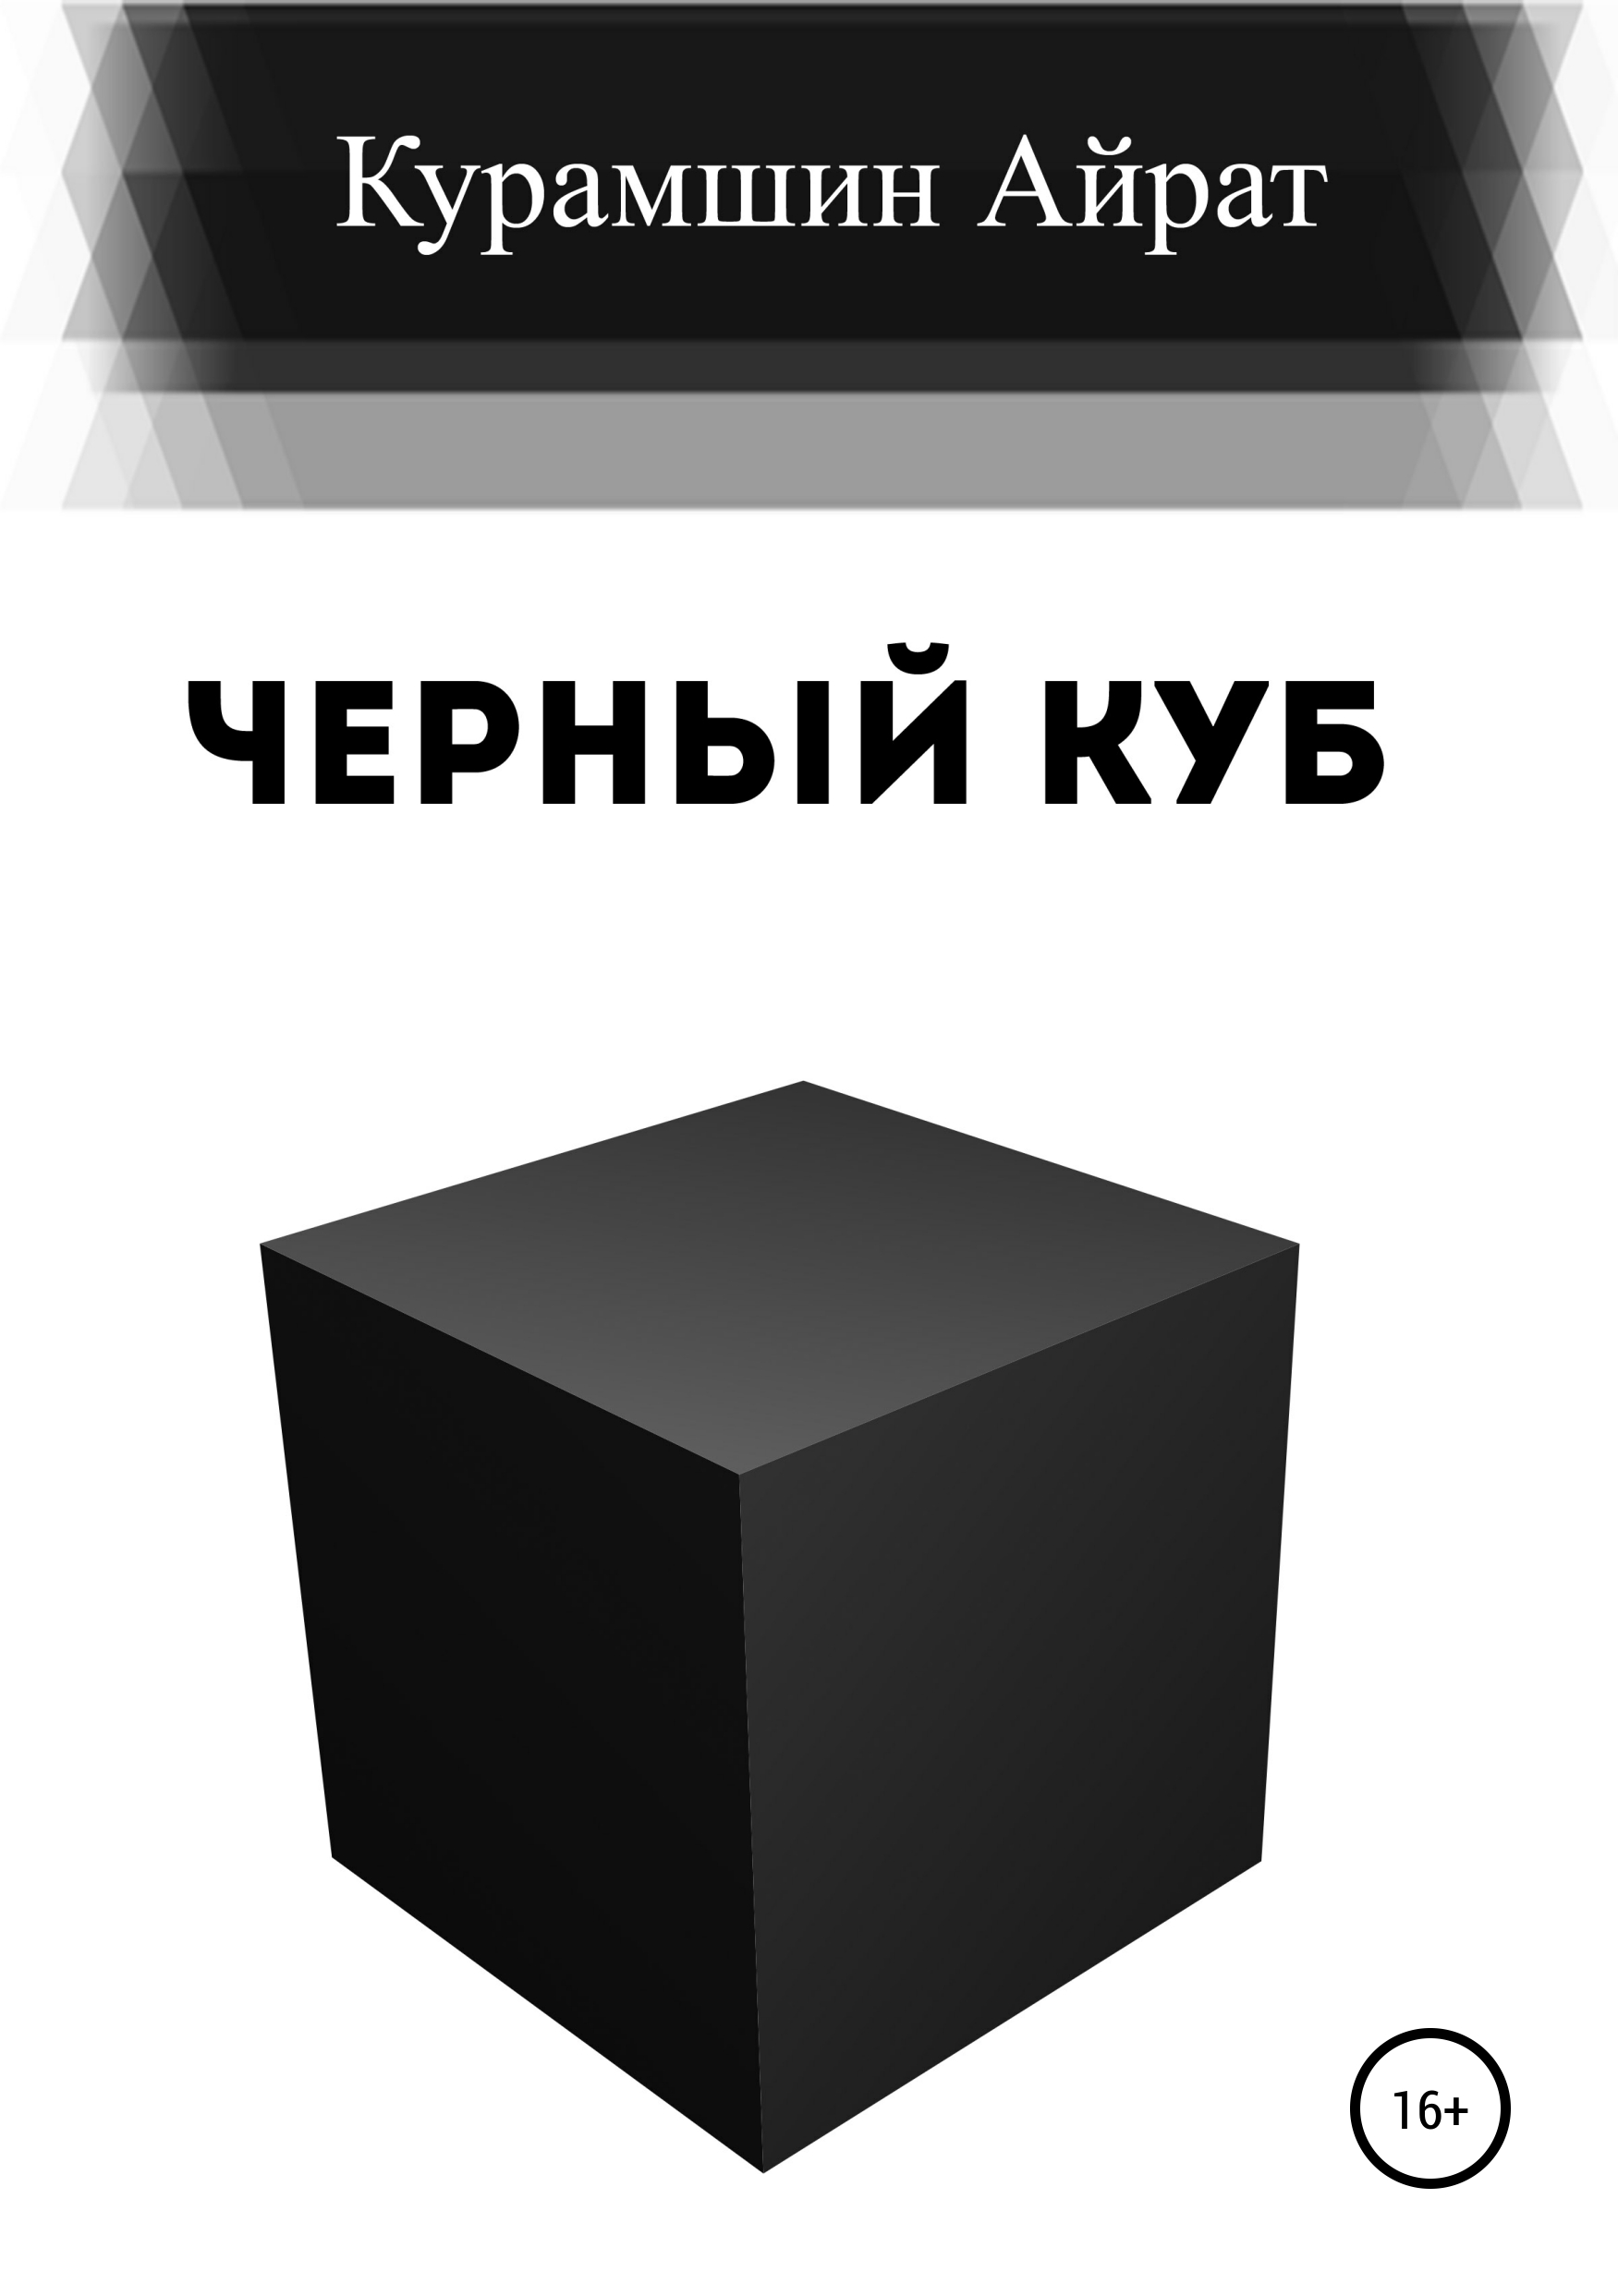 Книга Черный куб из серии , созданная Айрат Курамшин, может относится к жанру Остросюжетные любовные романы, Героическая фантастика, Общая психология. Стоимость электронной книги Черный куб с идентификатором 42733426 составляет 0 руб.